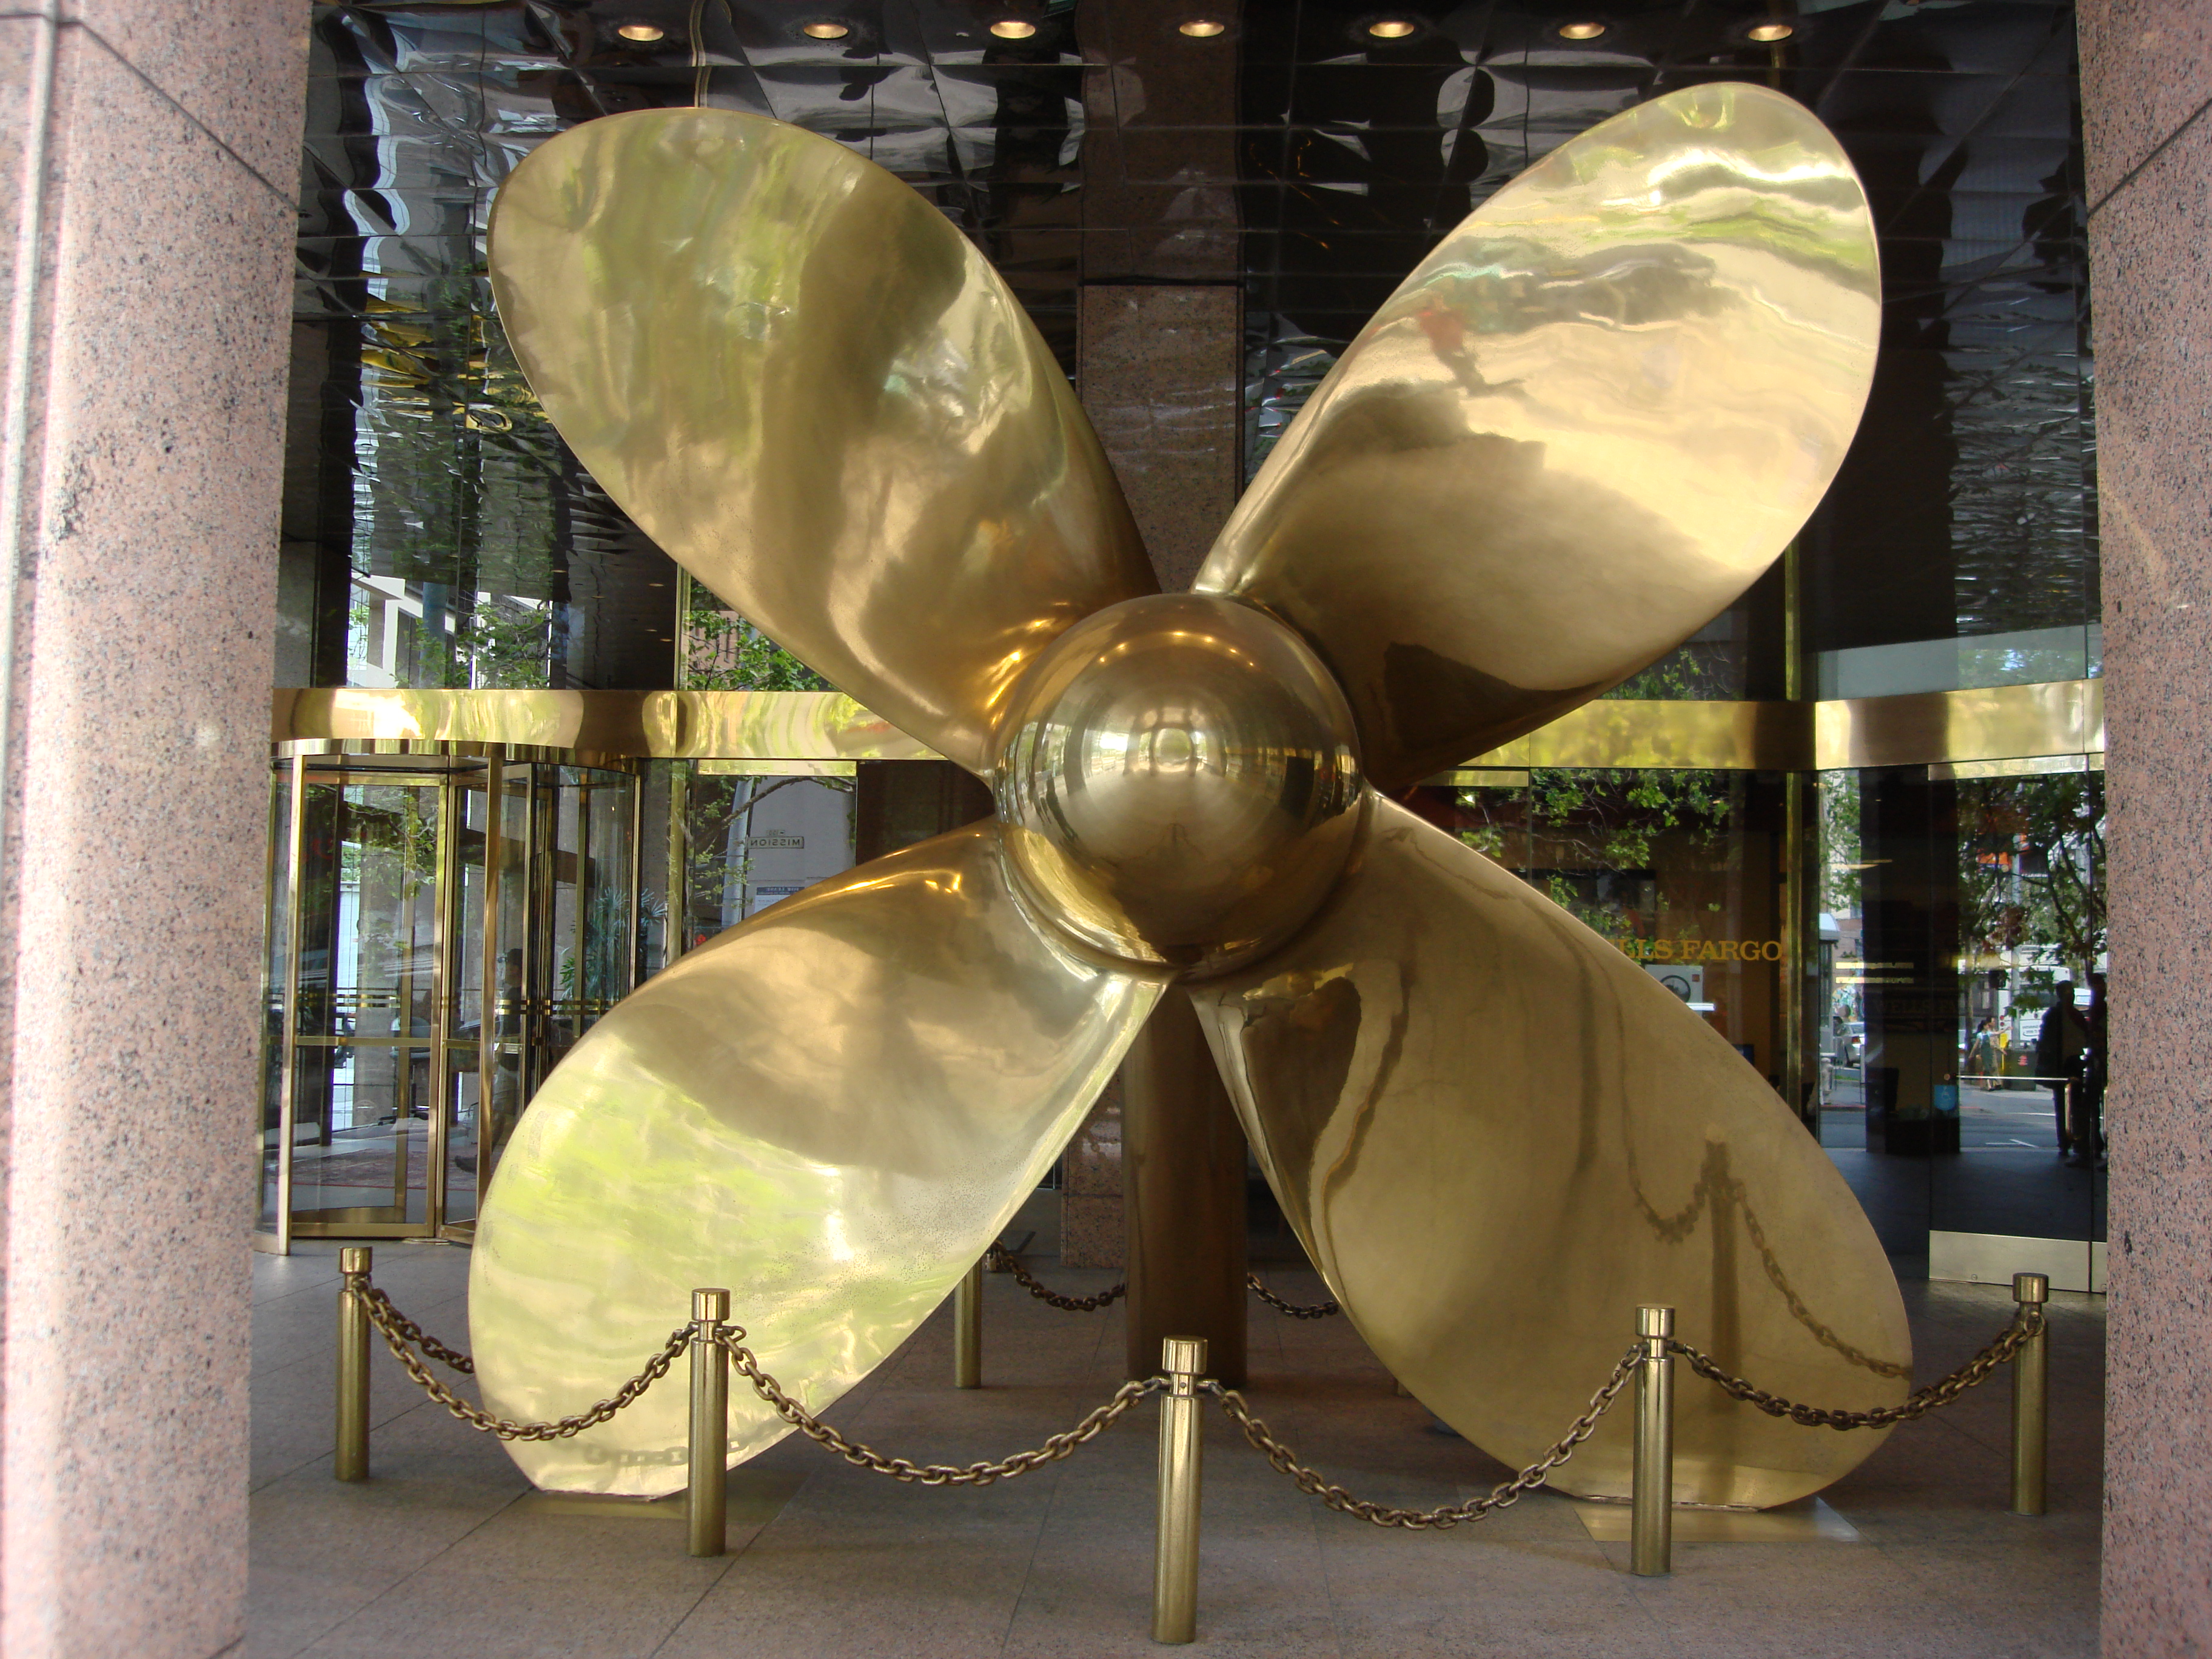 Big-ass propeller outside Wells-Fargo